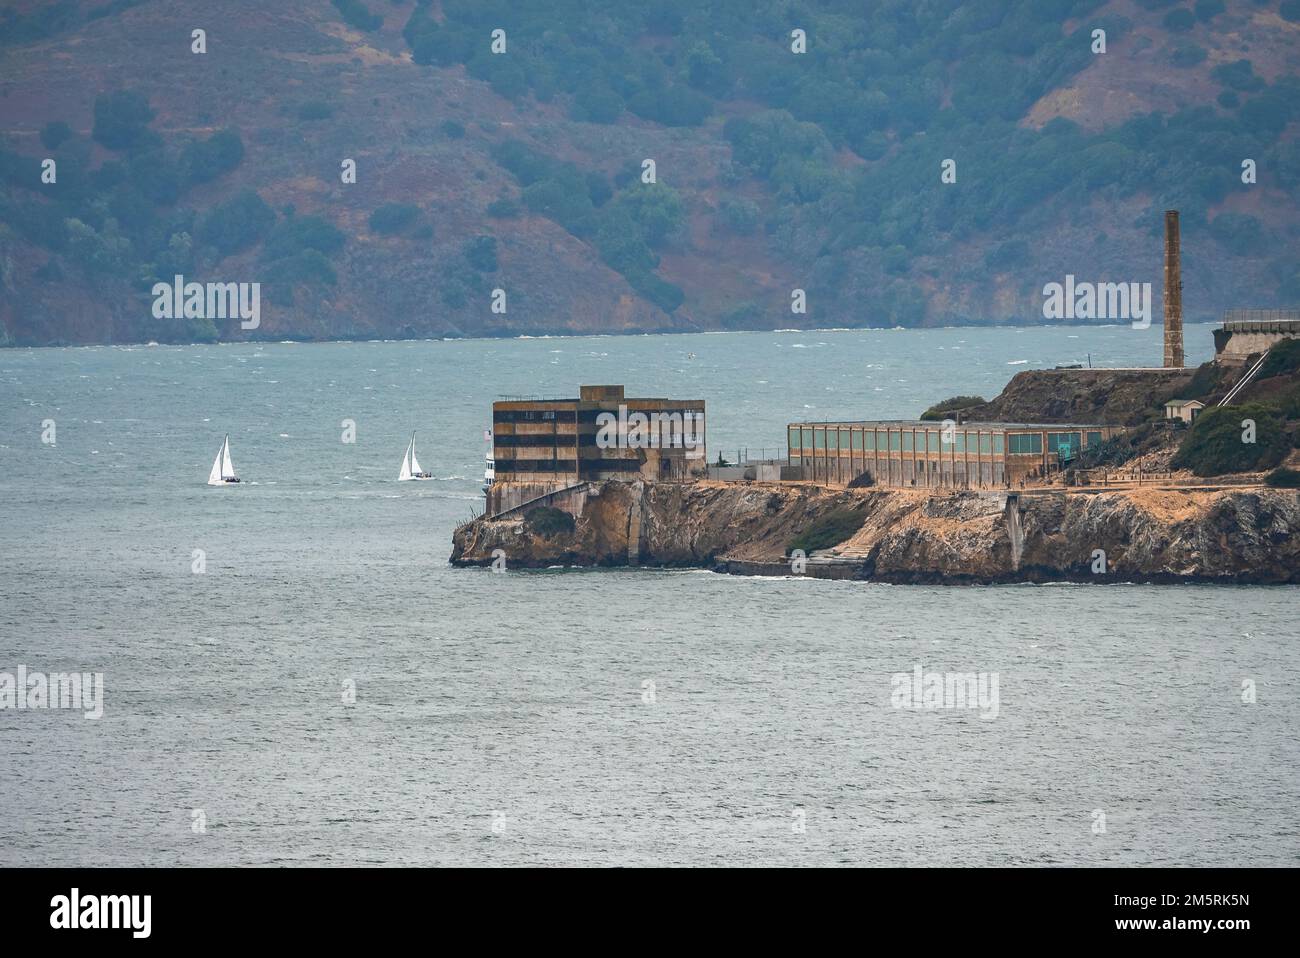 Vue lointaine sur les anciens bâtiments de l'île d'Alcatraz au milieu de la baie de San Francisco Banque D'Images